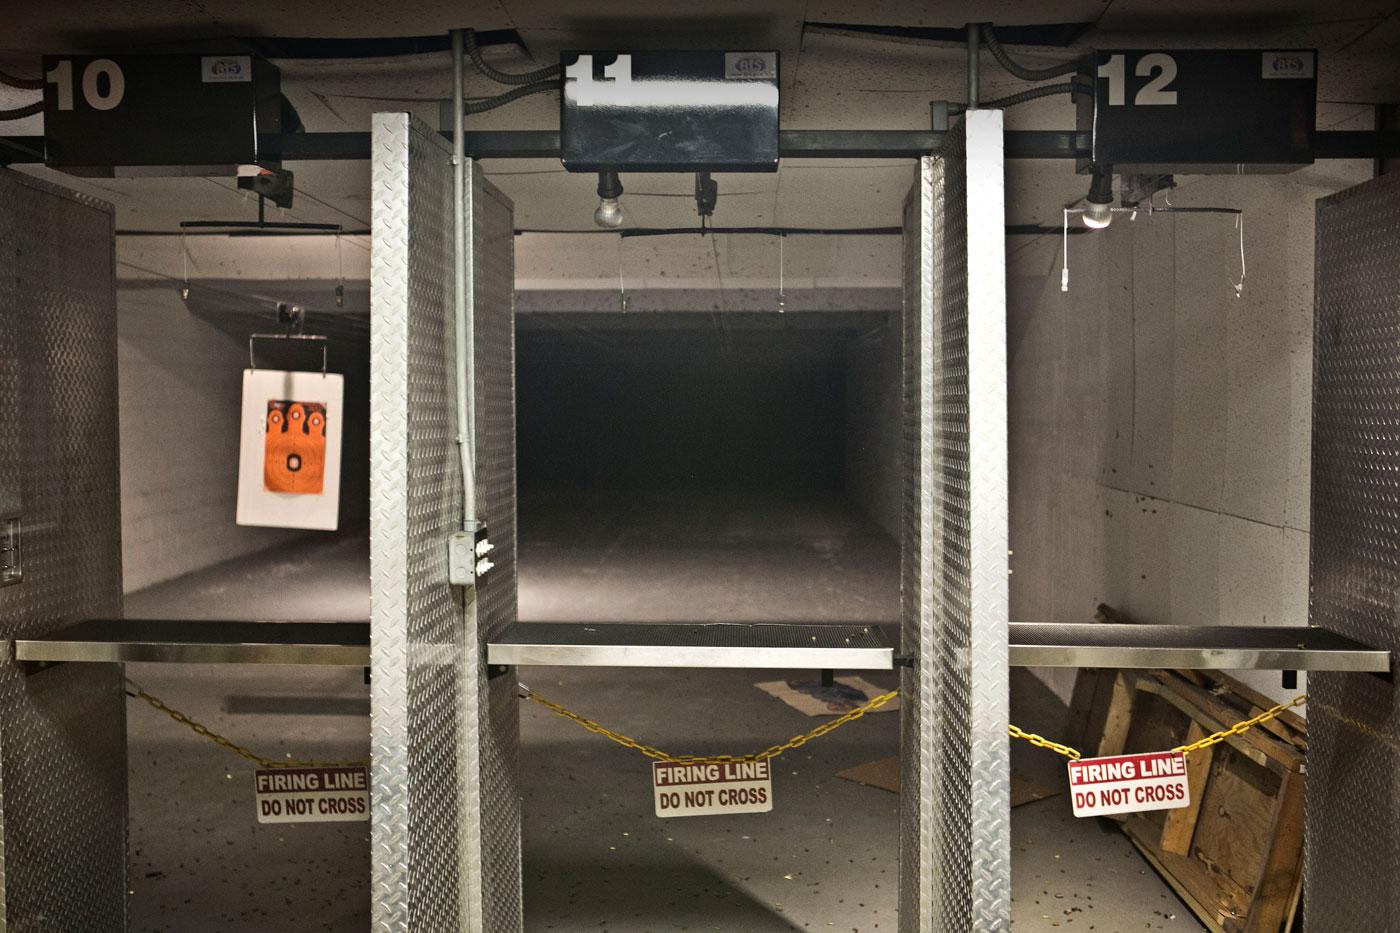 I anslutning till vapenaffären ligger en skjutbana där Mateen uppges ha provskjutit sina nyinköpta vapen, som han sedan använde för att döda 49 människor.